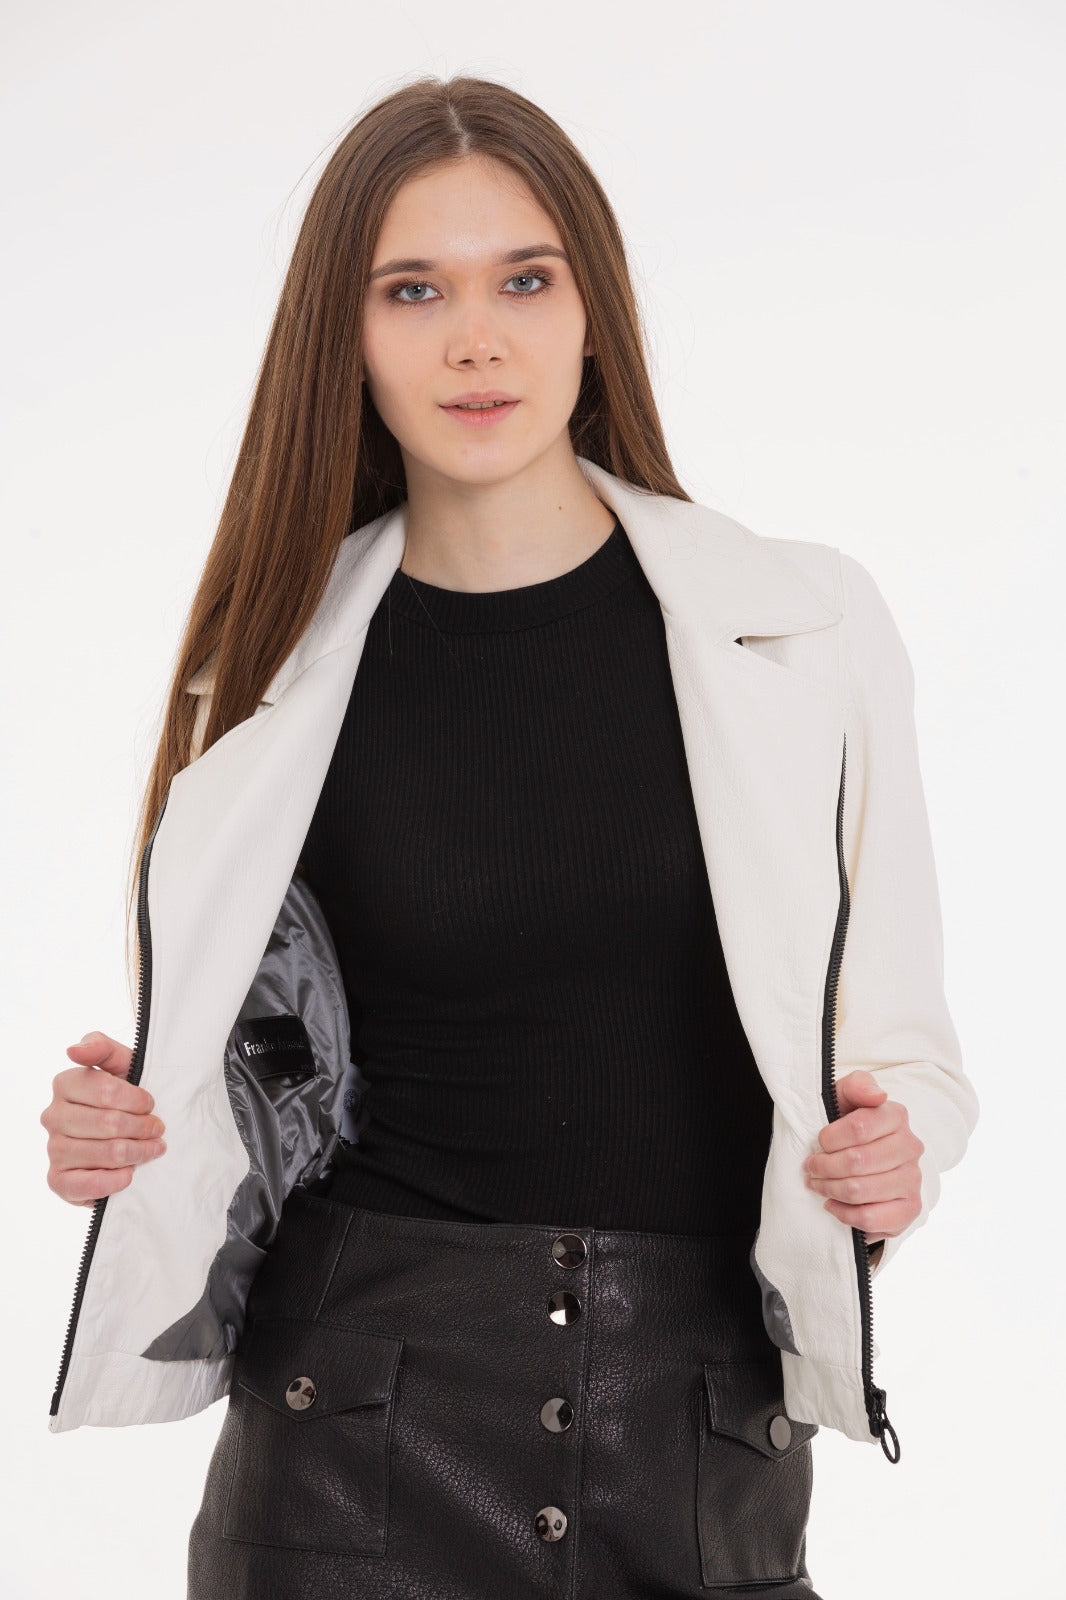 The Alomartes Women White Leather Jacket